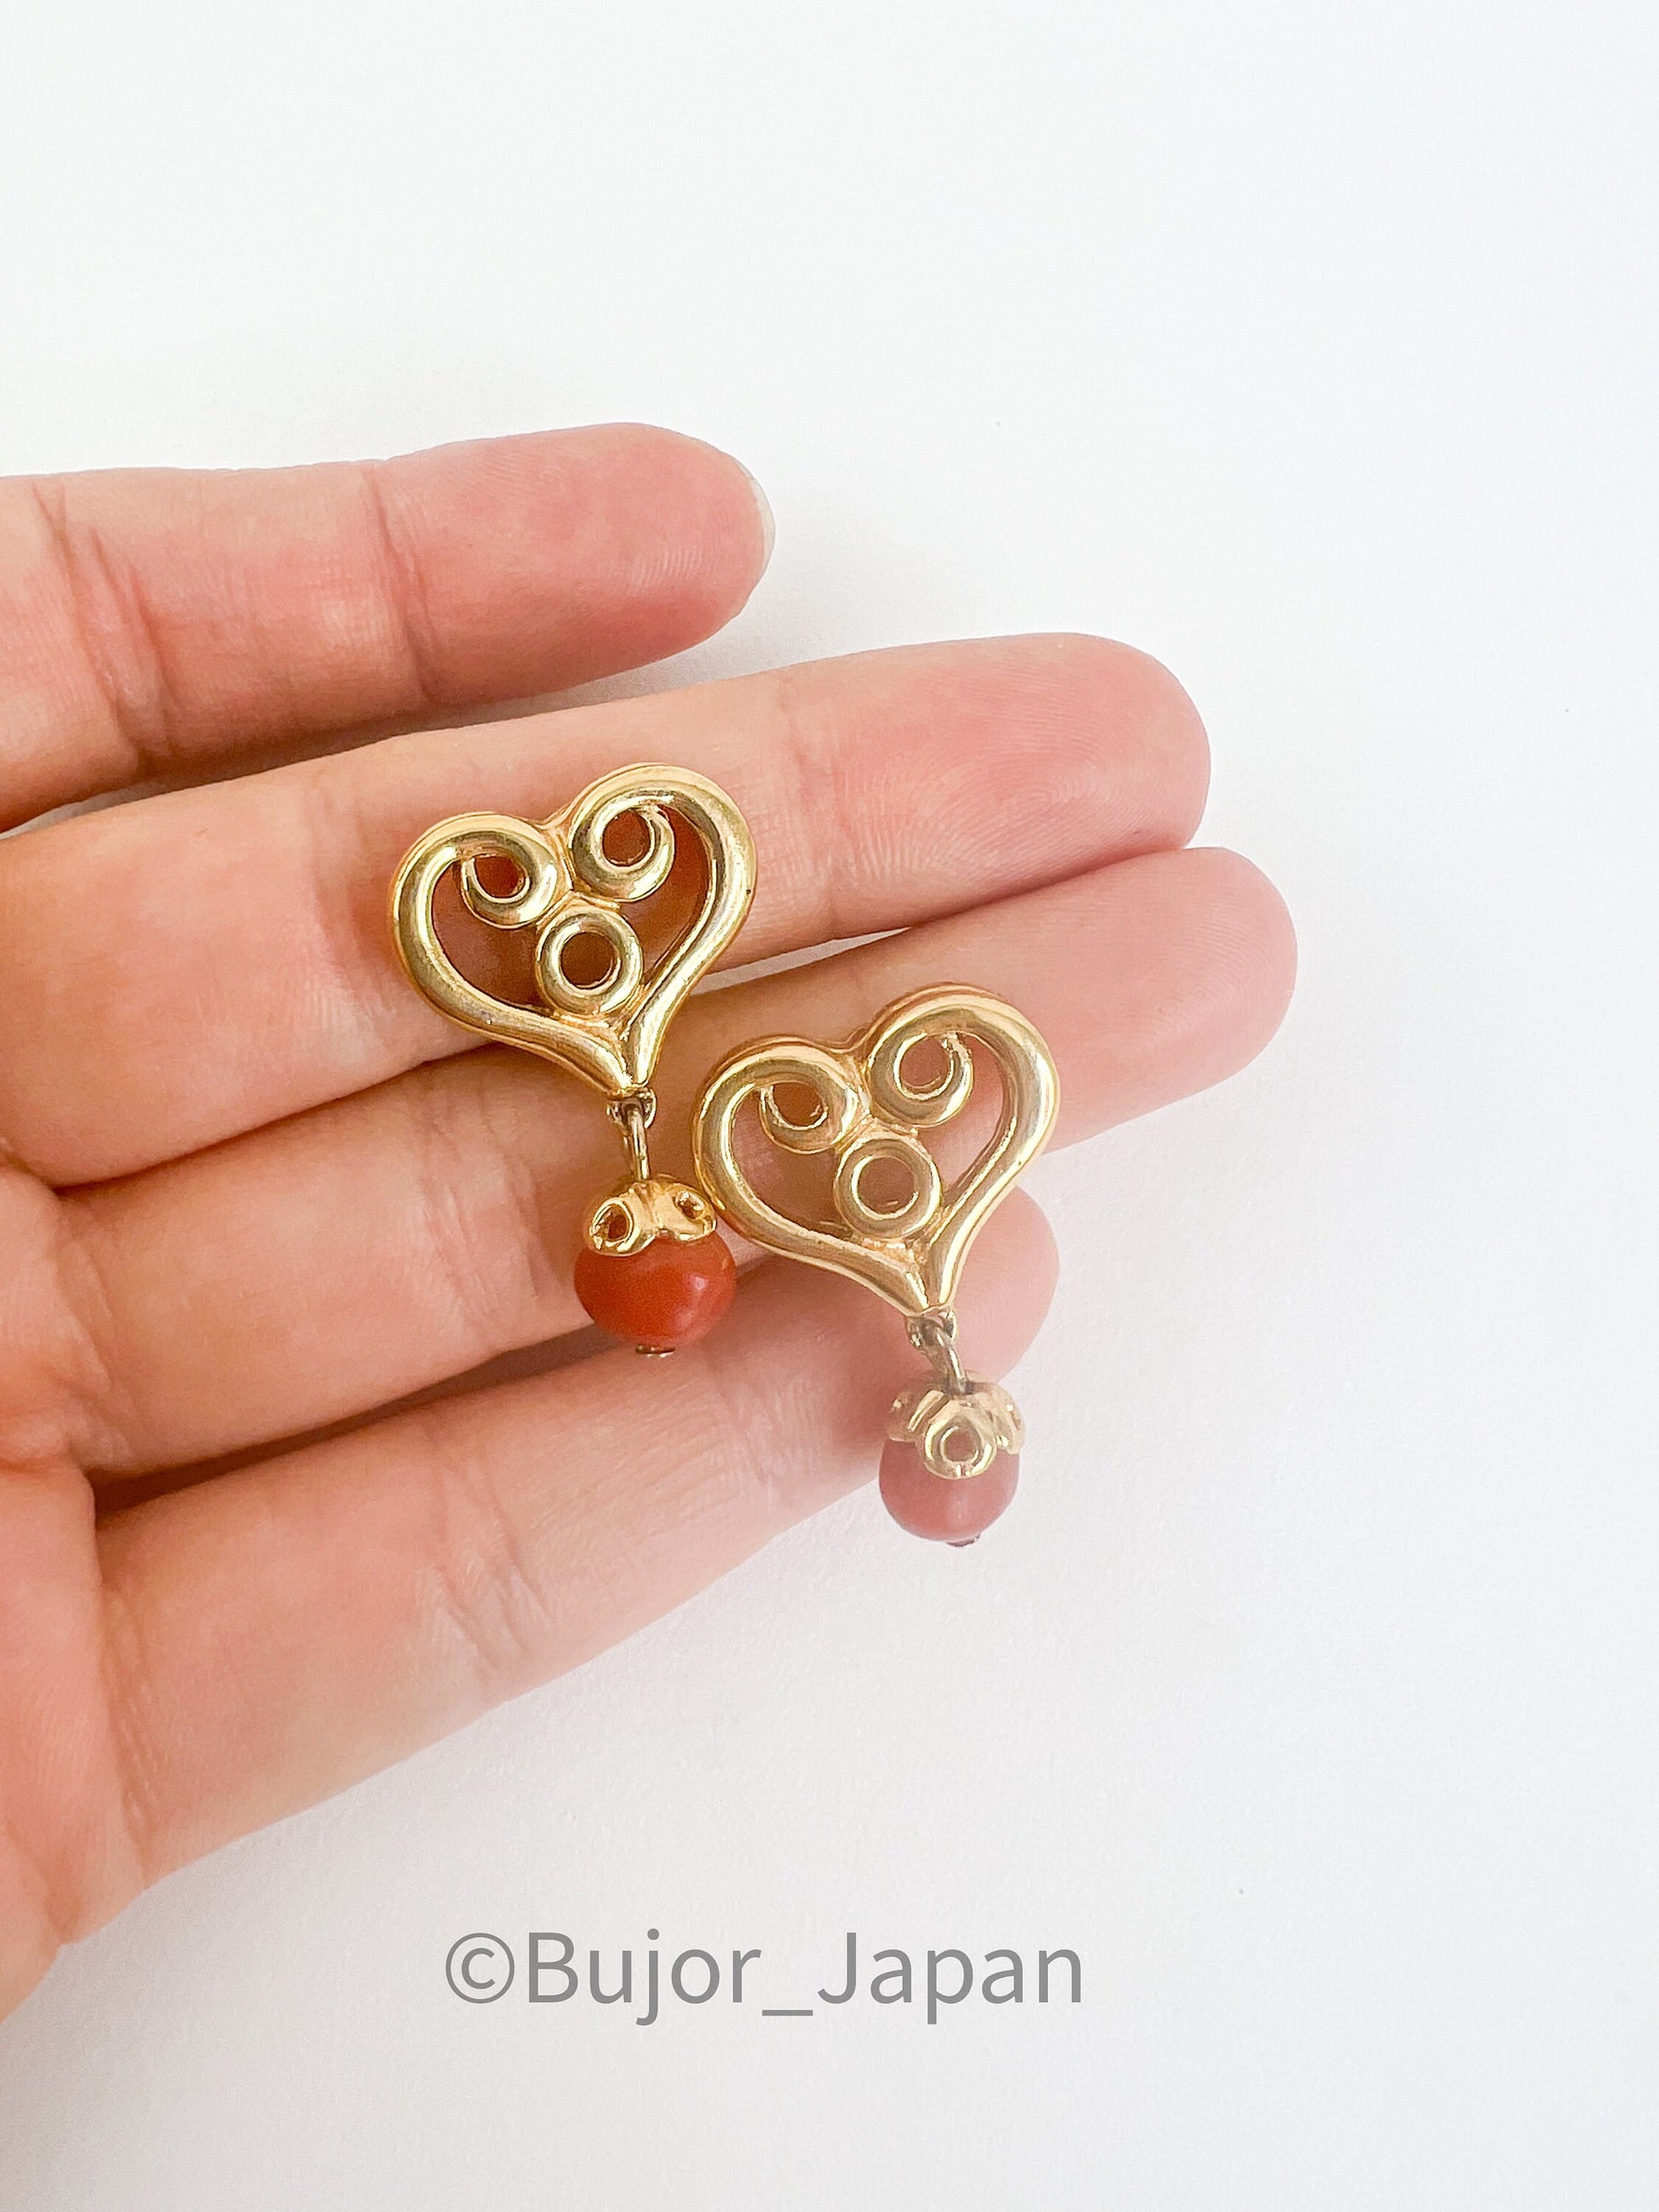 Givenchy Vintage Small Heart Charm Dangle Earrings, Gold Tone Earrings, Heart Drop Earrings, Minimalist Earrings Cute Earrings